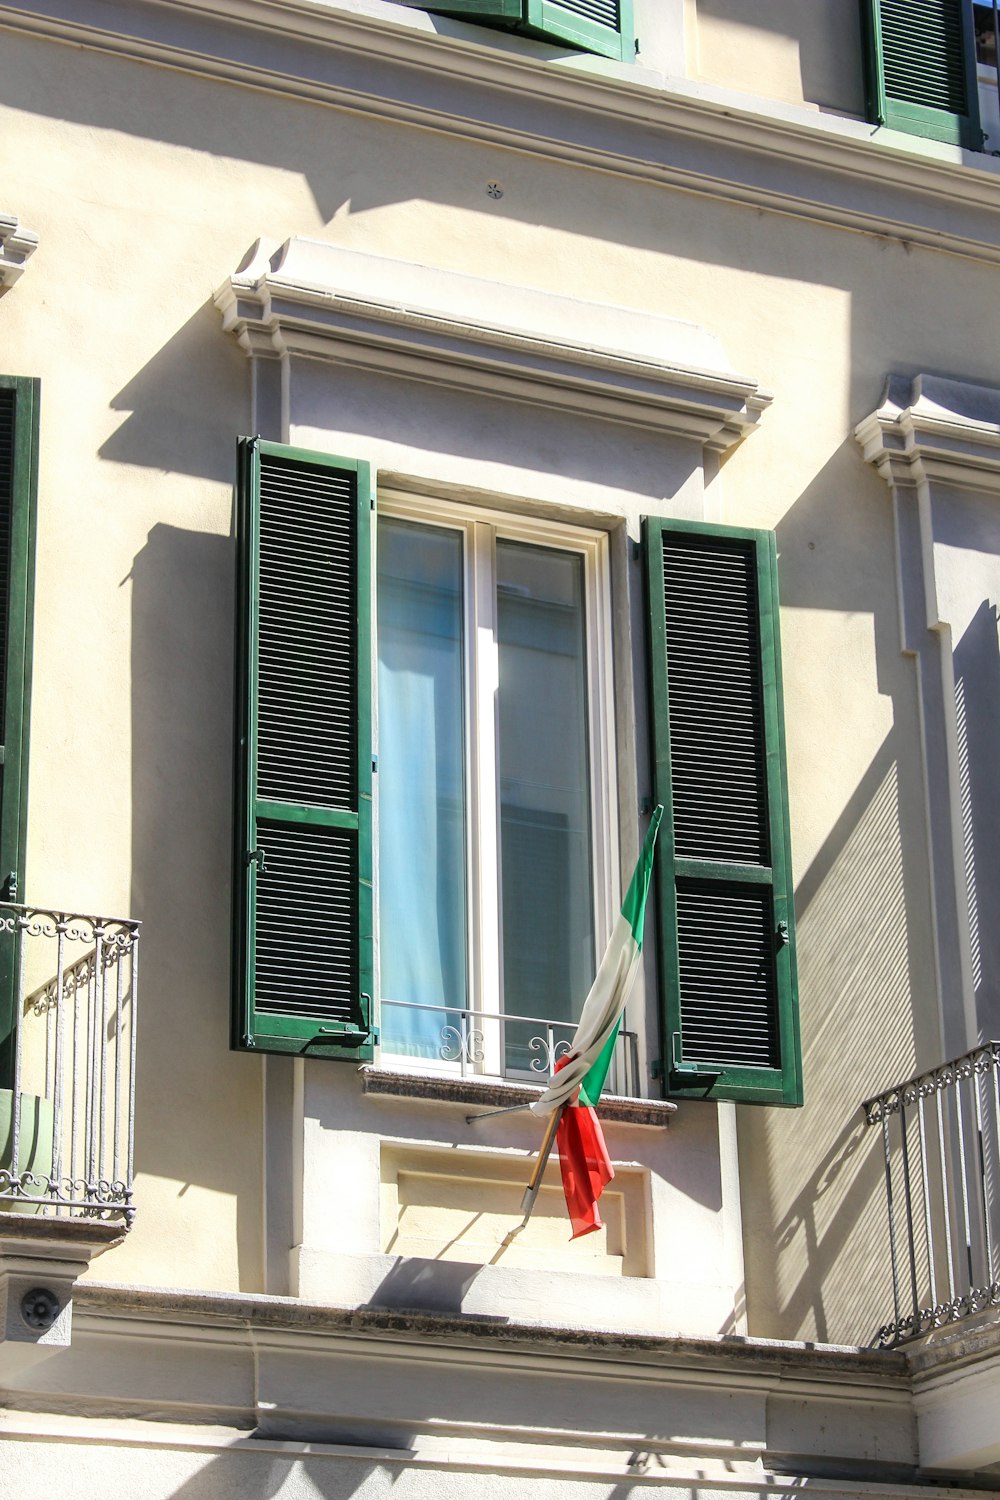 Un edificio con persiane verdi e una bandiera rossa